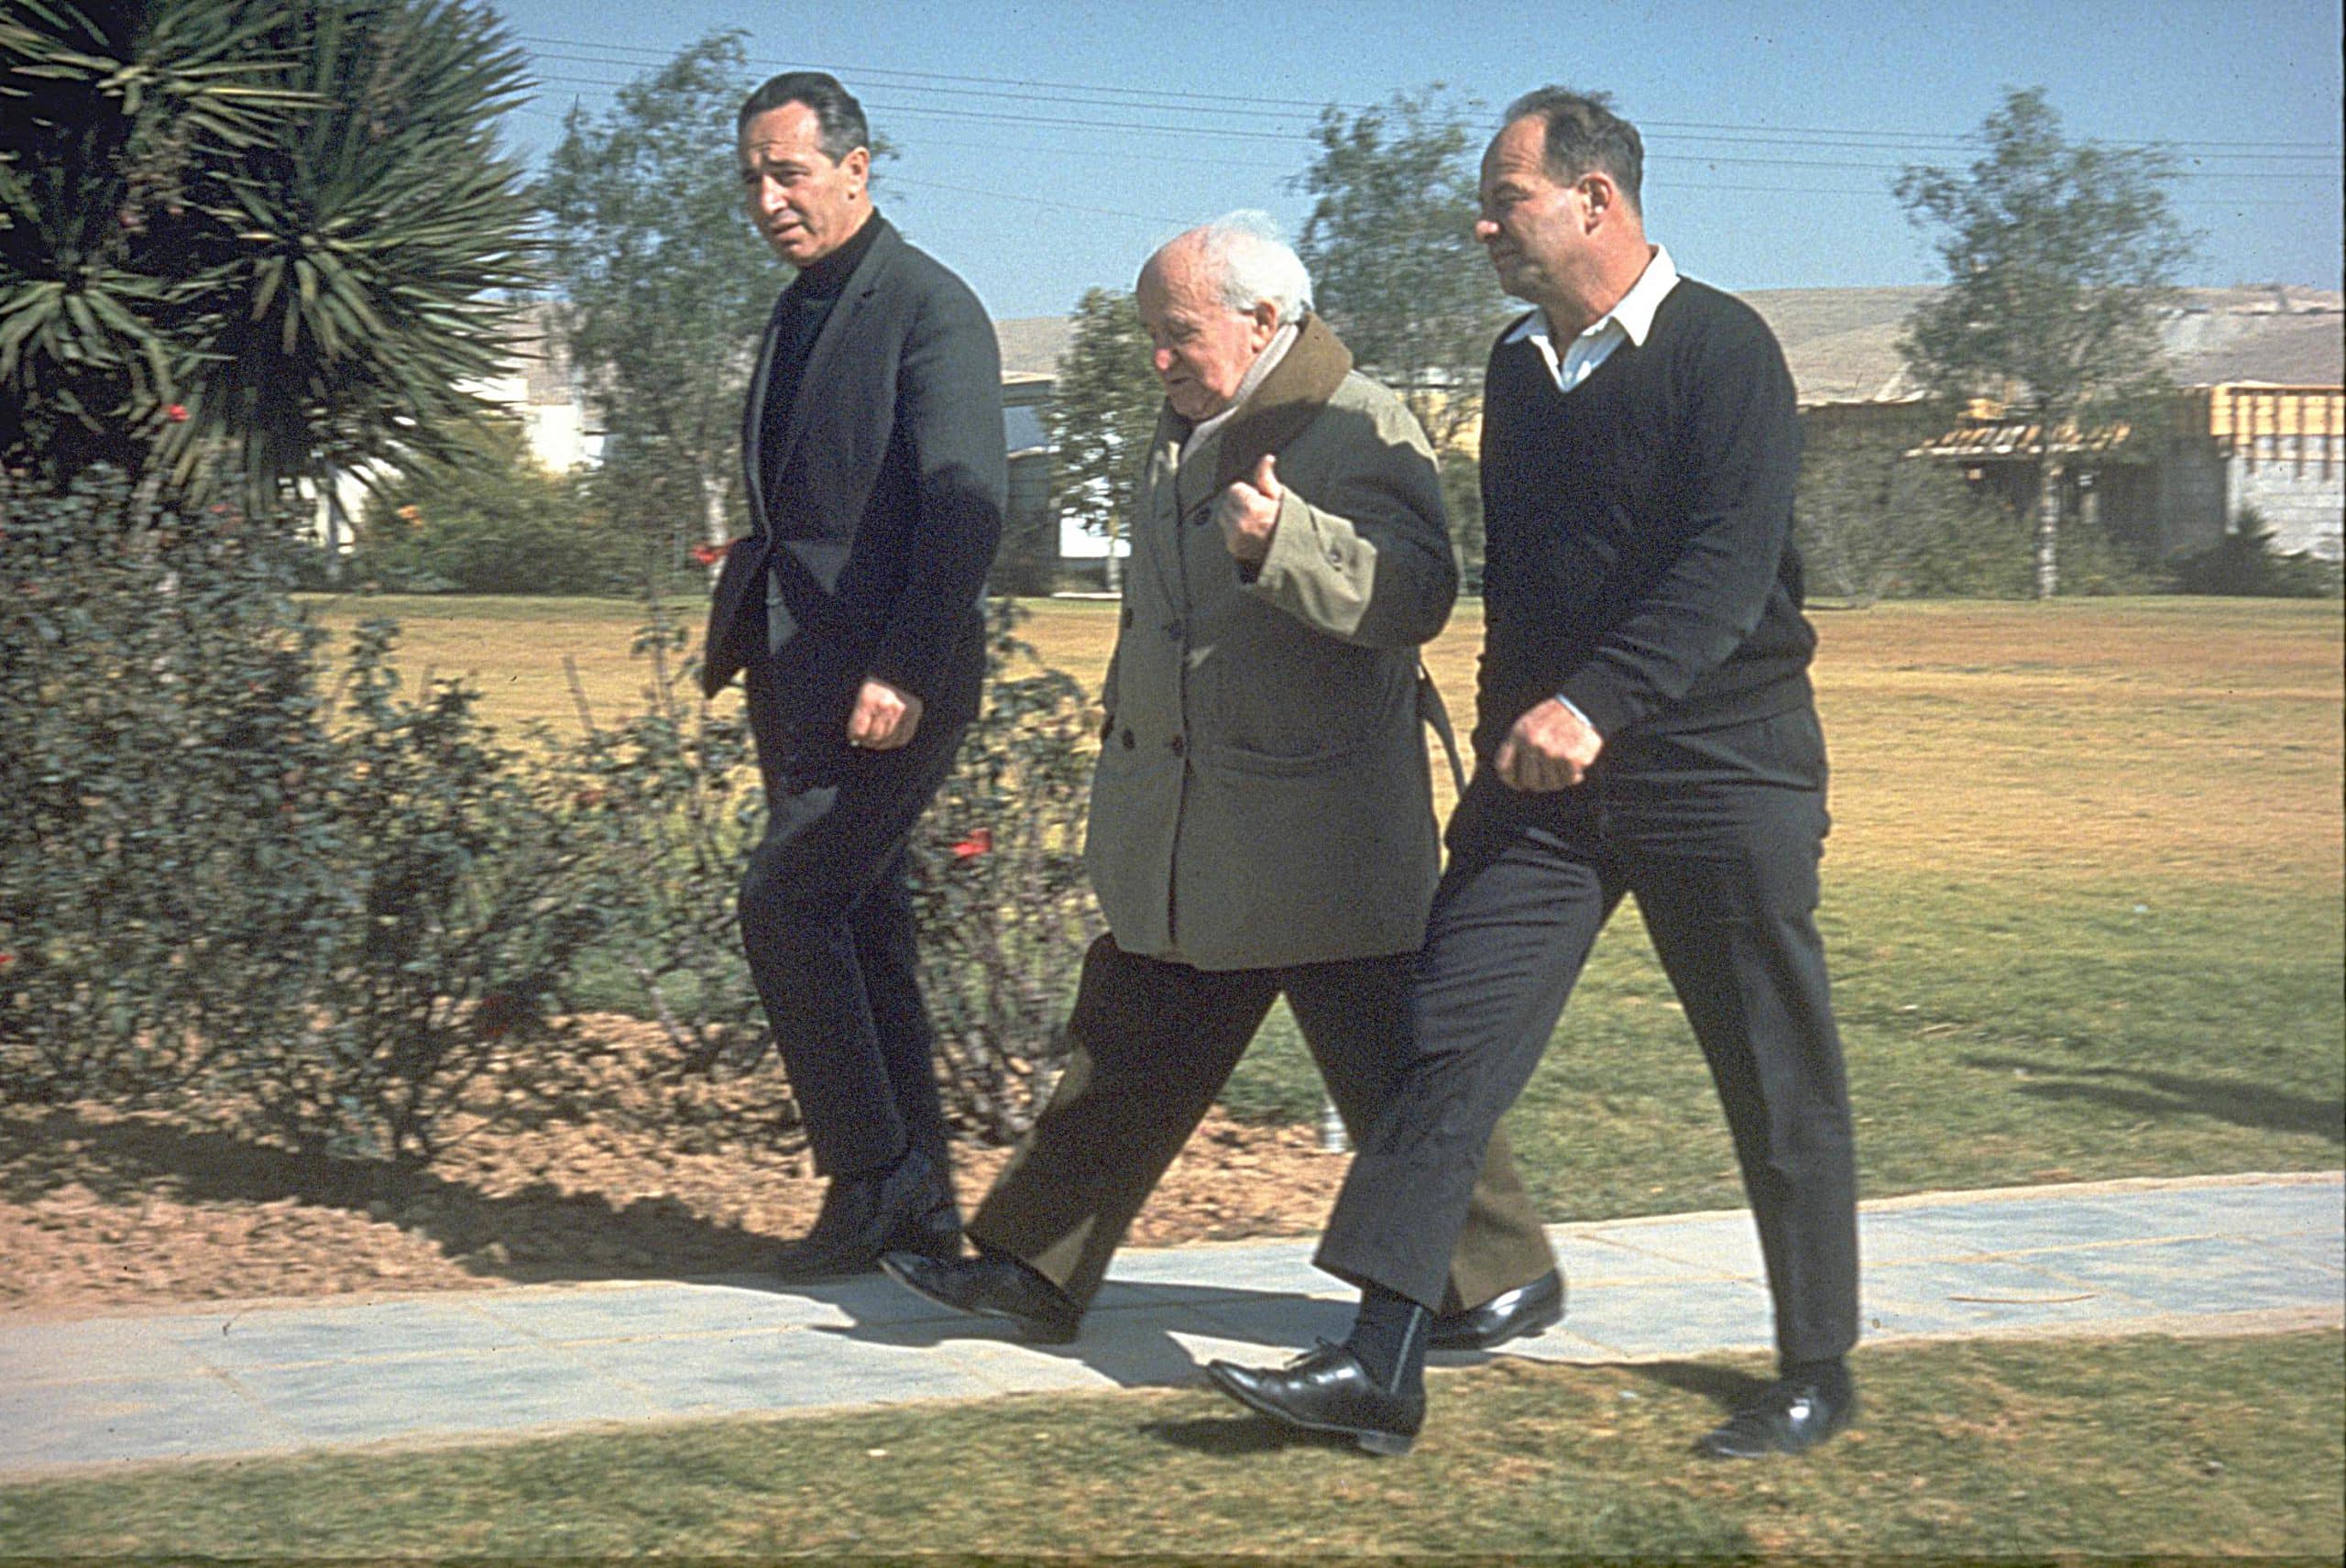 בן-גוריון בצעדתו היומית בשדה בוקר (משמאל שמעון פרס), 1 במרץ 1969